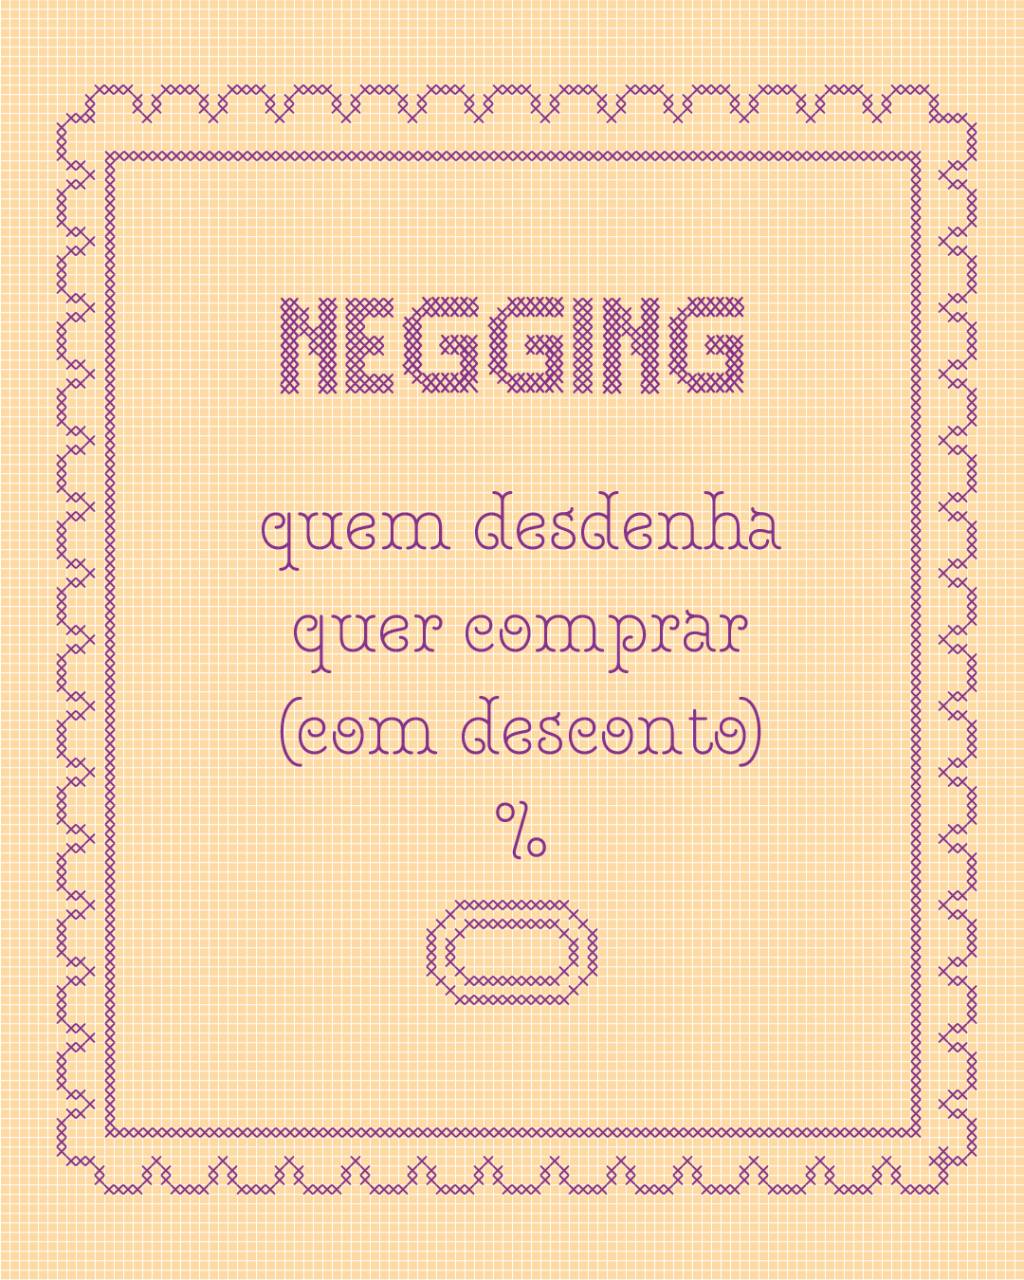 negging